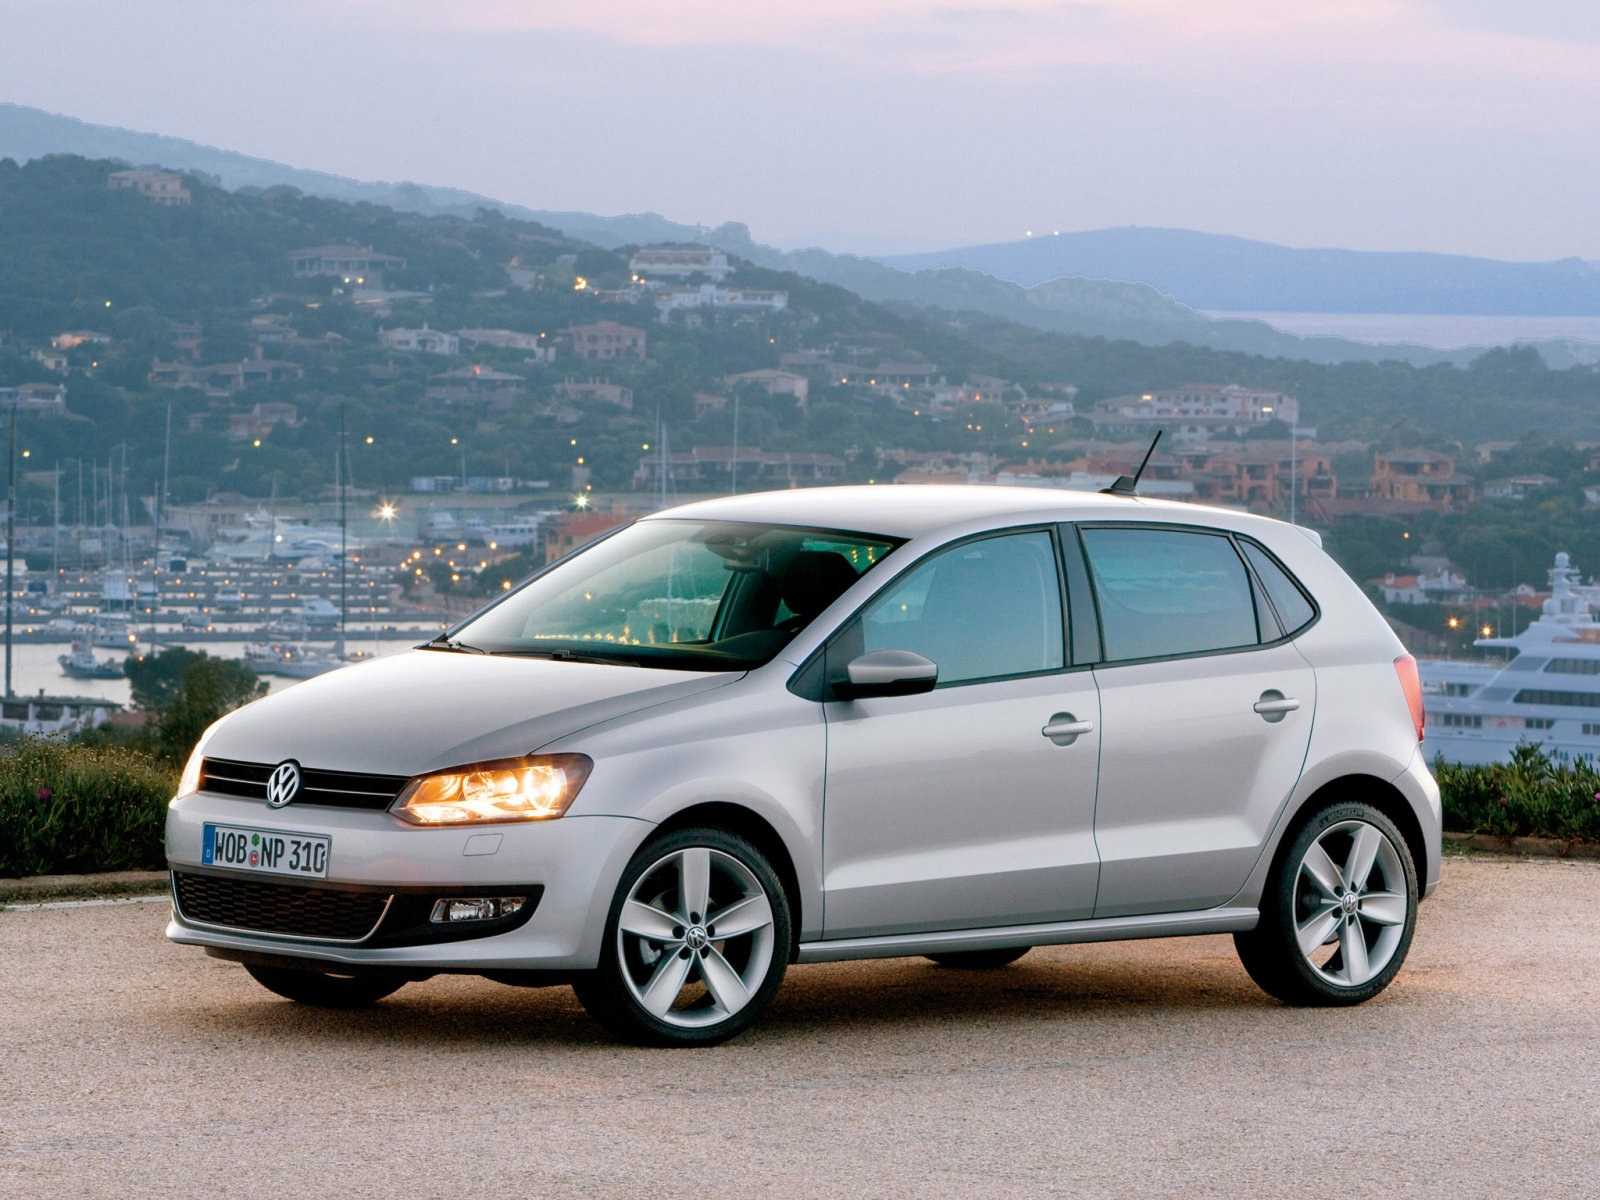 Volkswagen polo hatchback (фольксваген поло хэтчбек) - продажа, цены, отзывы, фото: 5082 объявления